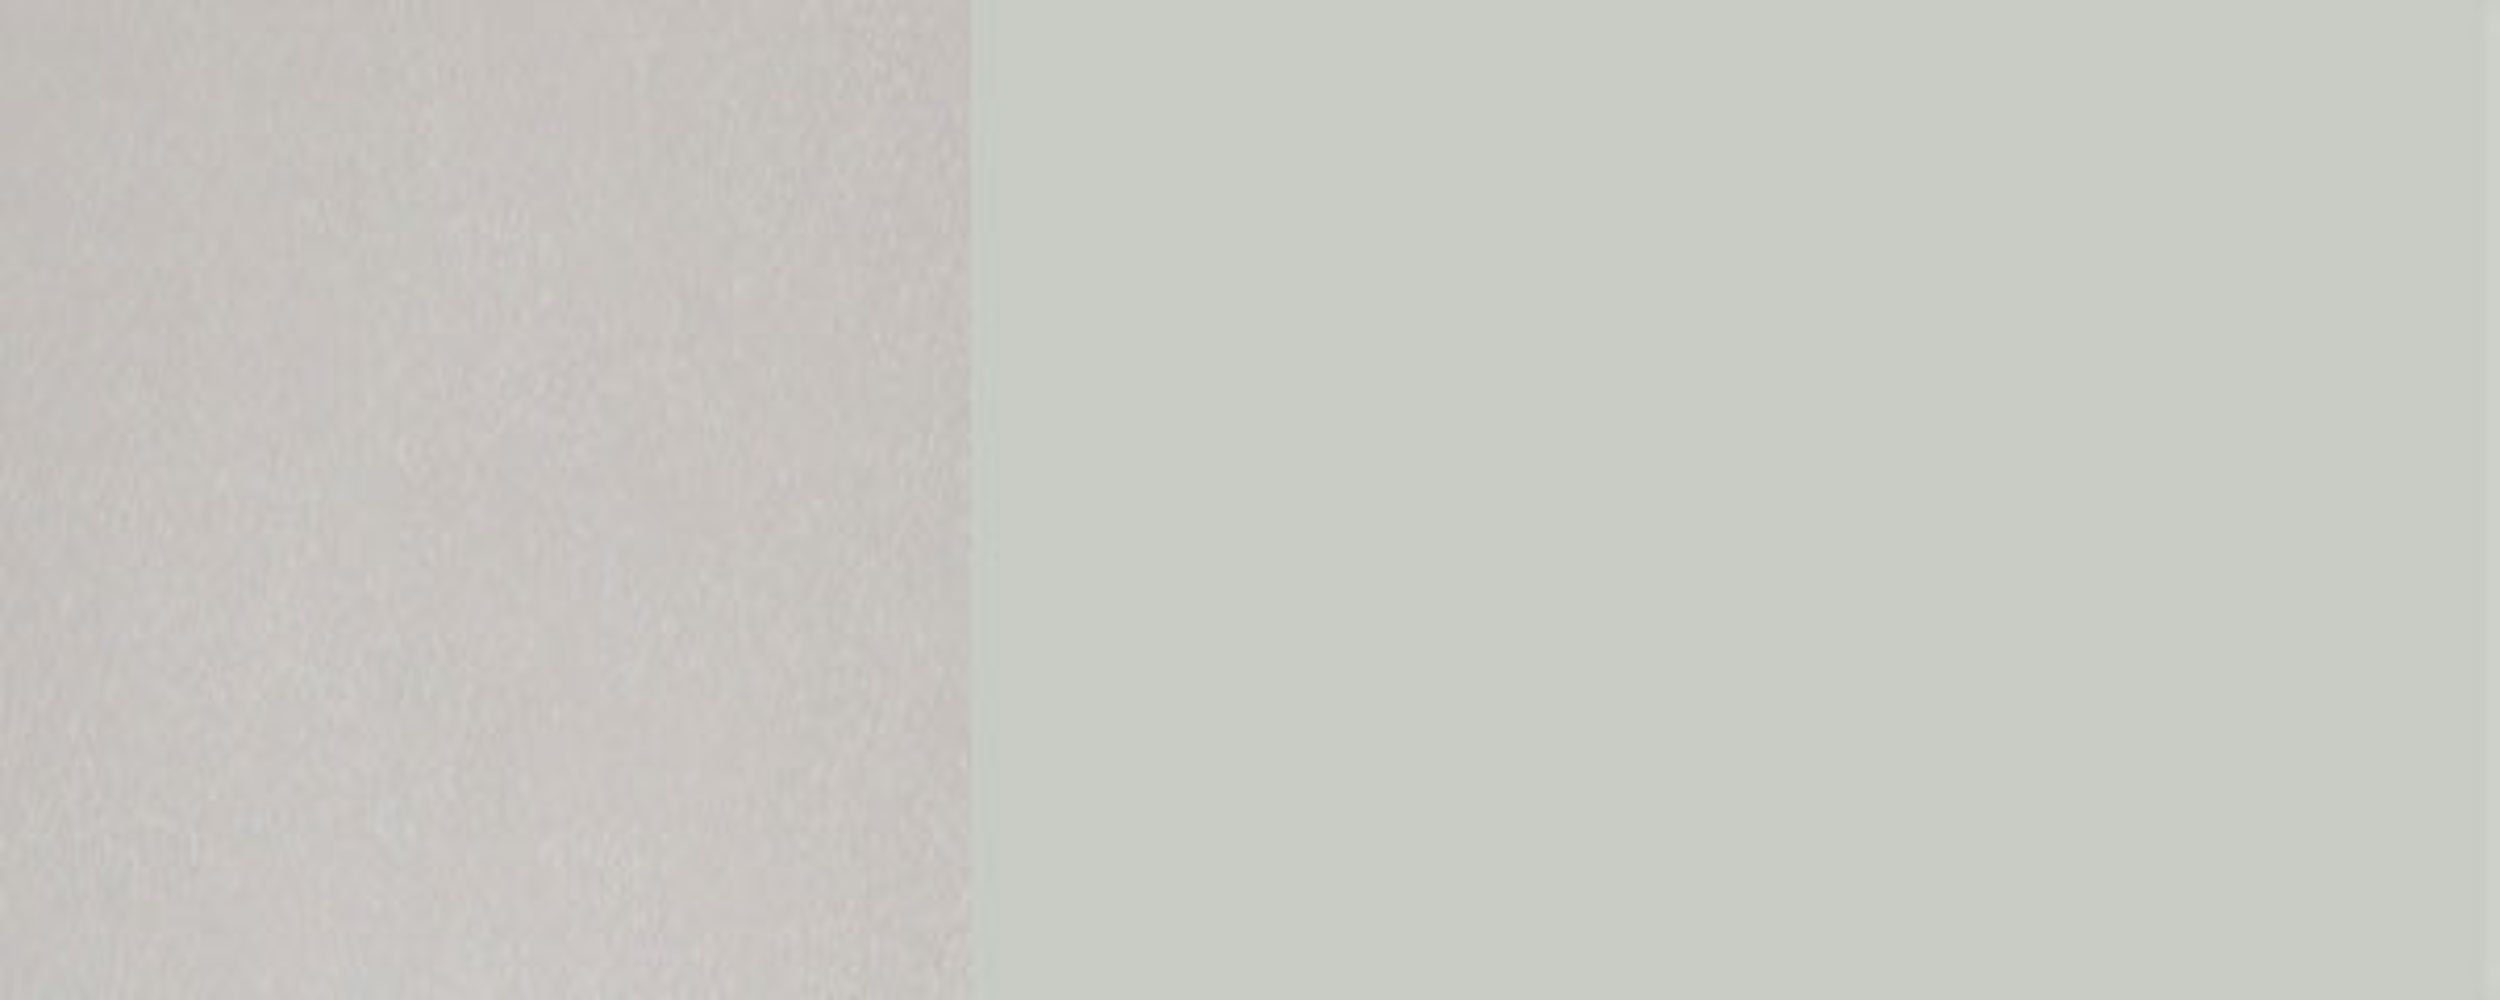 Feldmann-Wohnen Backofenumbauschrank Florence wählbar papyrusweiß & mit Korpusfarbe 2 (Florence) 1 9018 Front- Fächer 60cm RAL Hochglanz grifflos Schublade